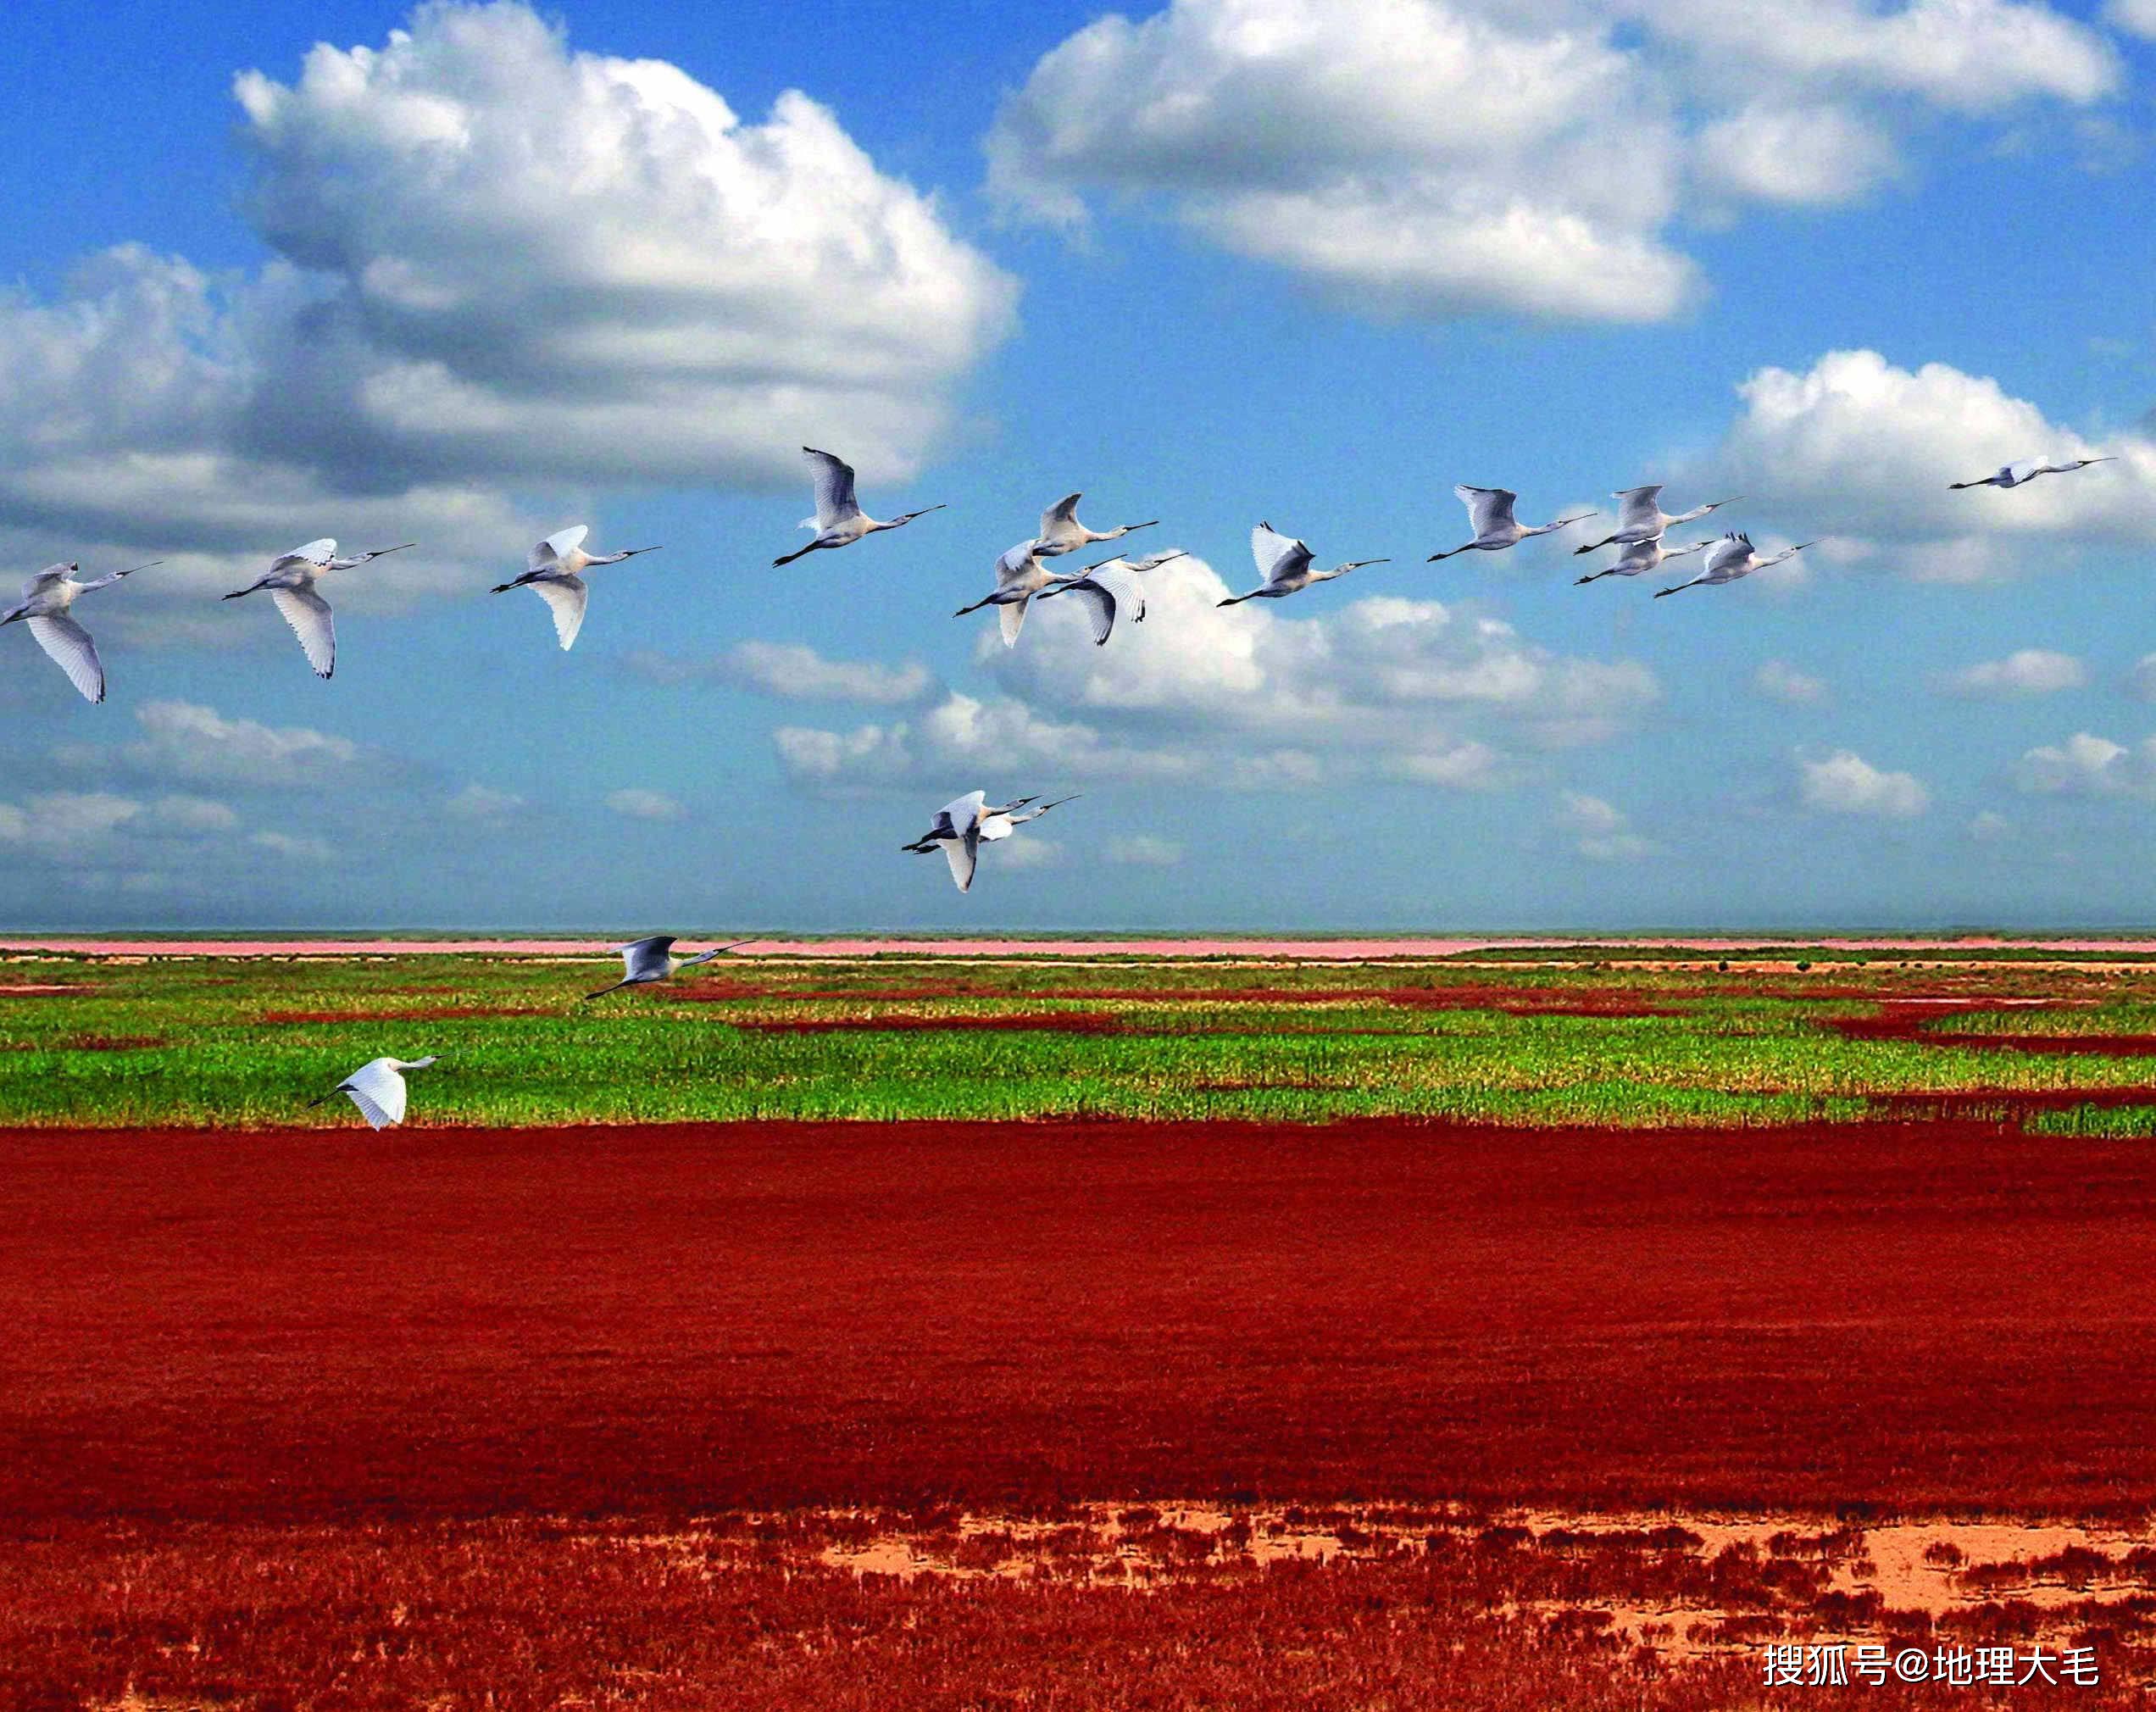 每年的9月至10月,黄河口都会形成"红地毯"景观,与遍野的芦苇荡交叉